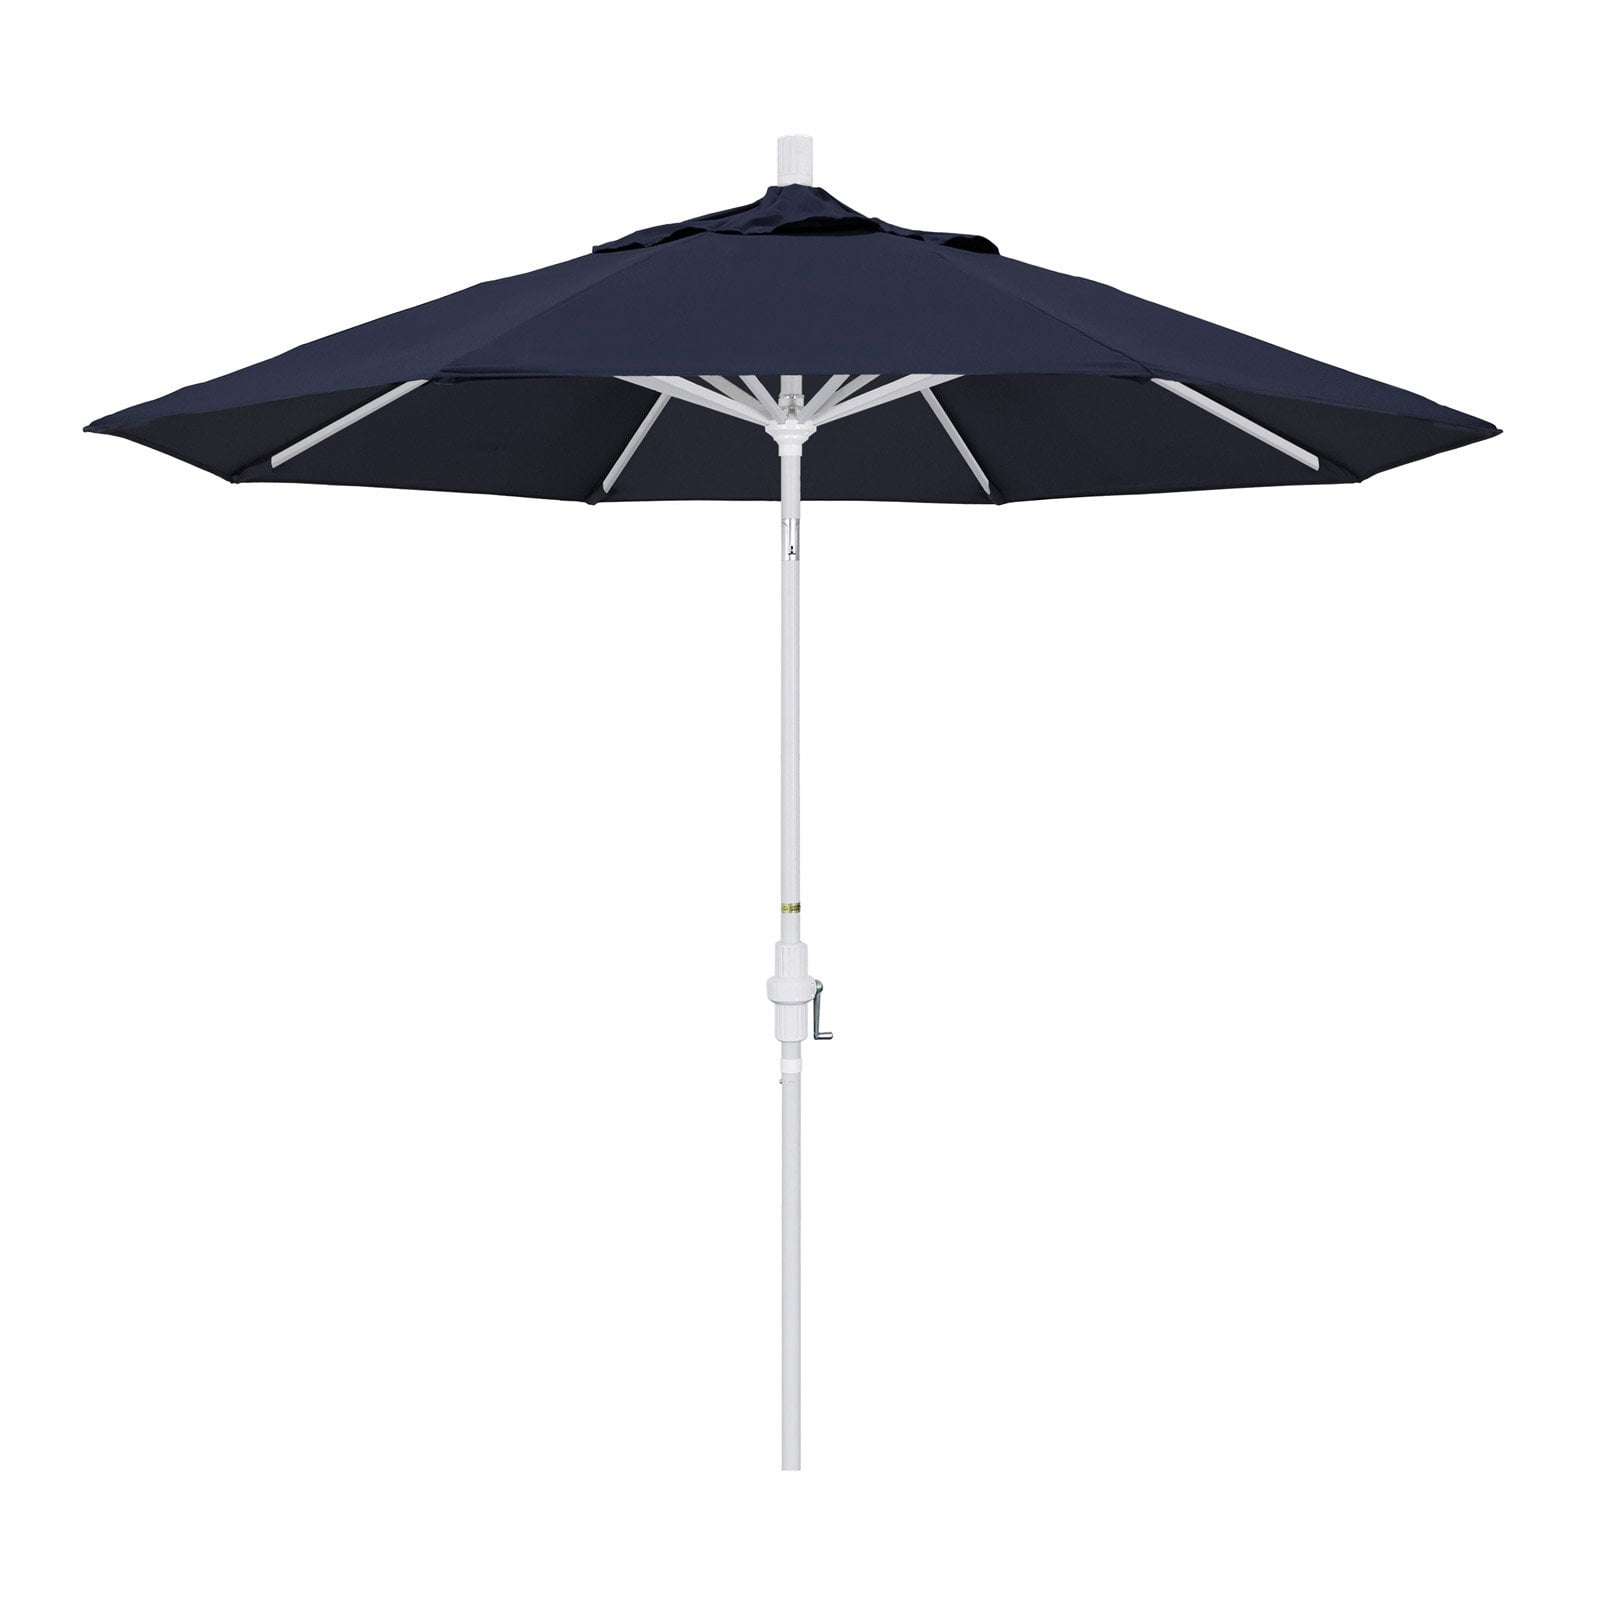 Red California Umbrella 9-Feet Aluminum Sunbrella Fabric Market Umbrella SDAU908900-5403